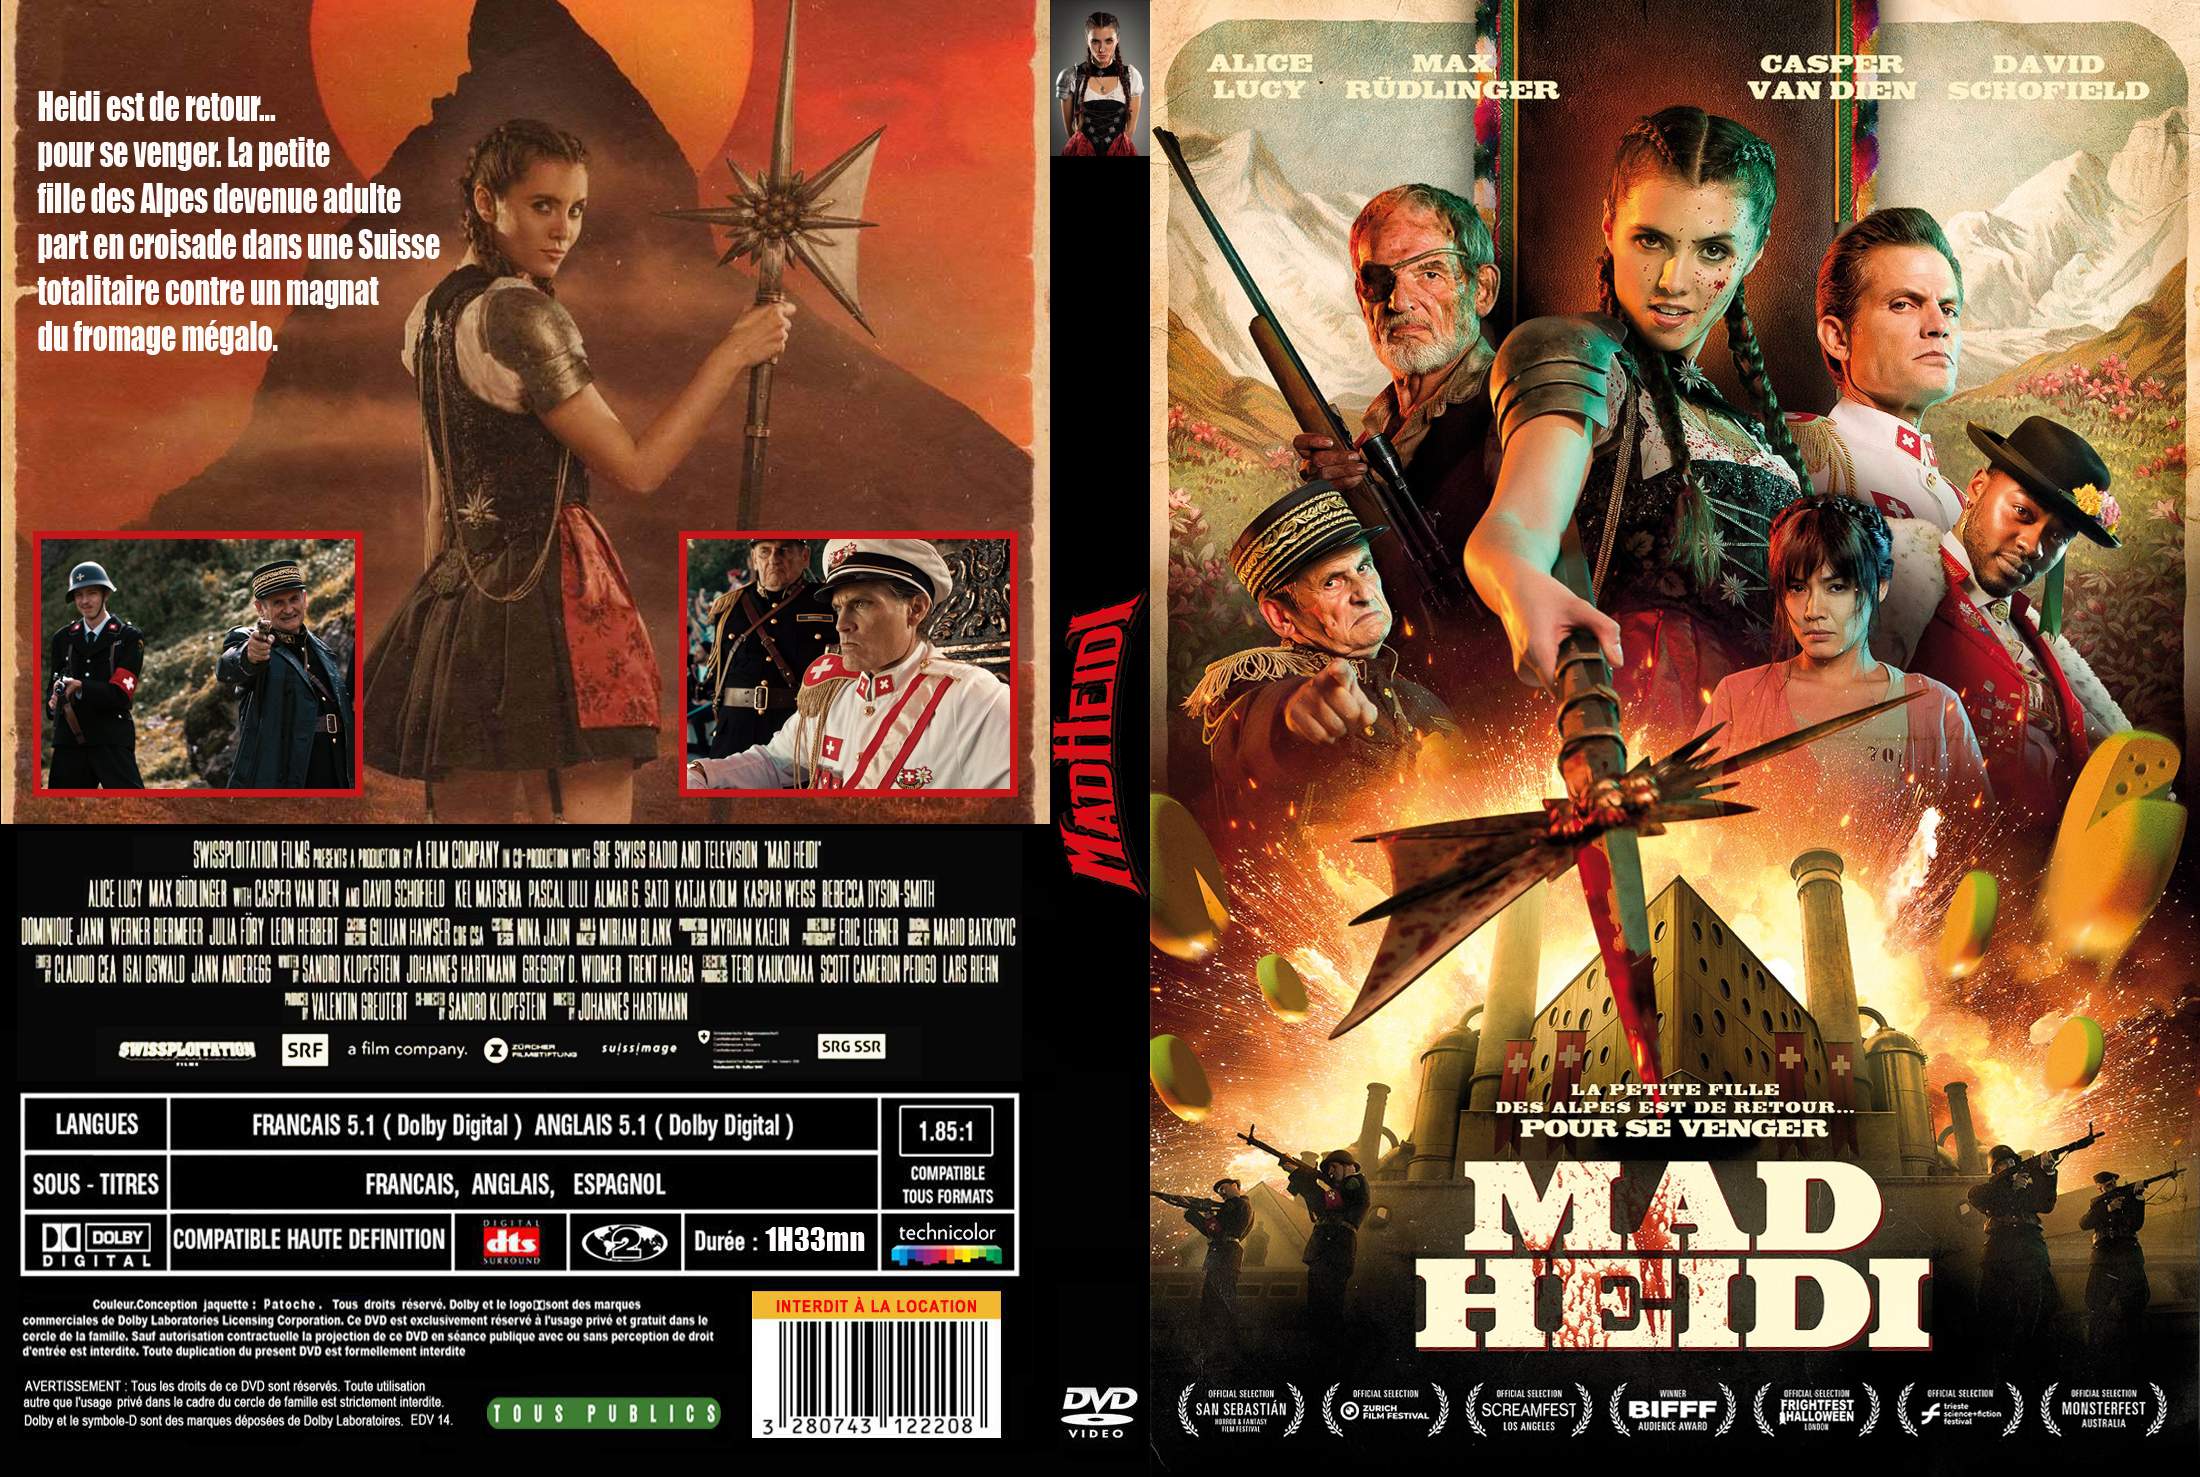 Jaquette DVD Mad Heidi custom